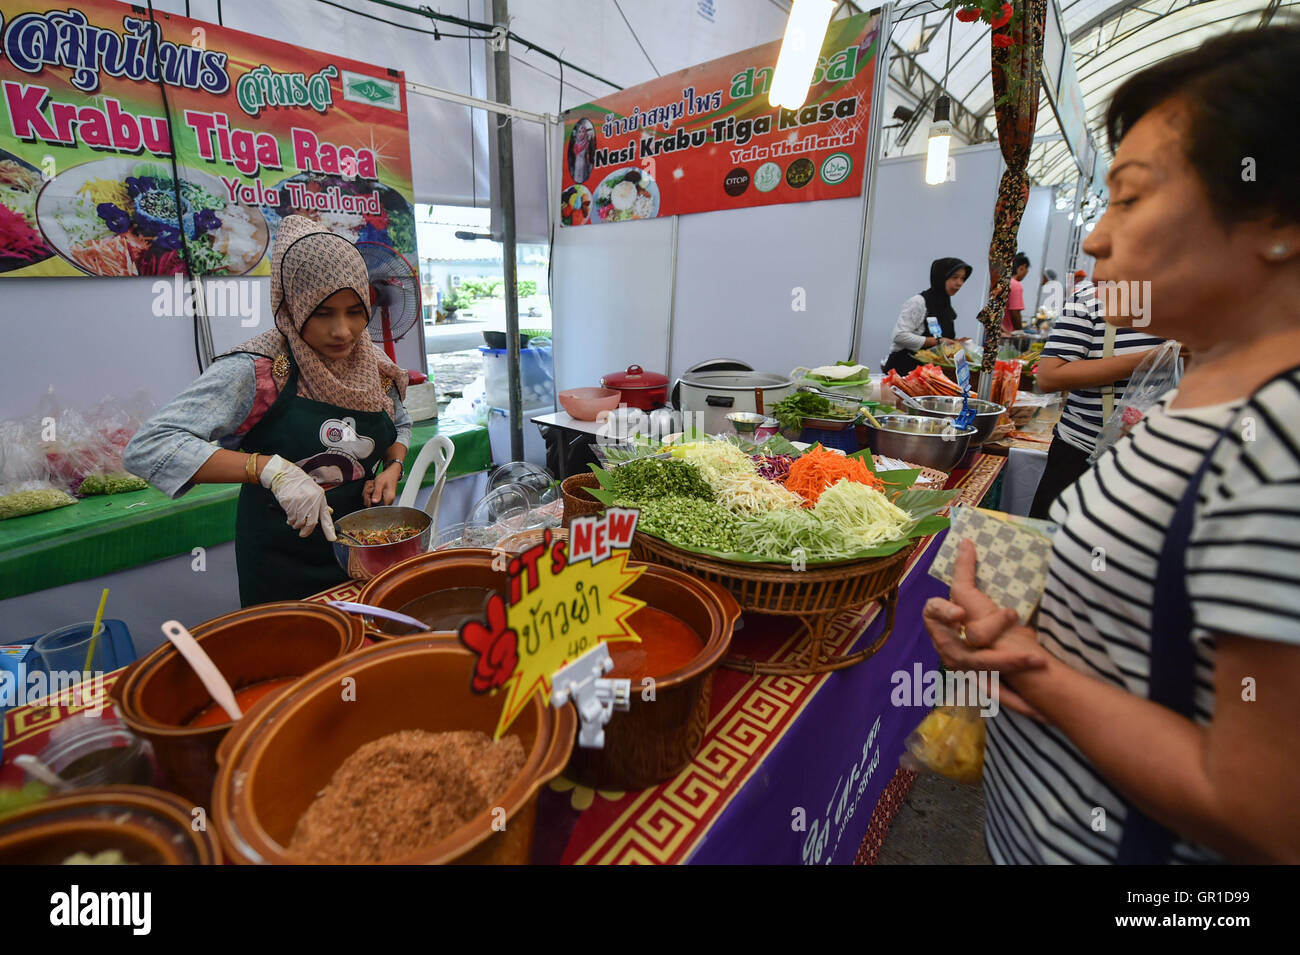 (160906)--NONTHABURI, 6. September 2016 (Xinhua)--ein Ladenbesitzer macht Nasi Krabu Tiga Rasa, ein lokales Gericht aus Süd-Thailand Yala Provinz, während ein Trade fair in Zentral-Thailand Nonthaburi, am 6. September 2016. Einen Trade fair mit Produkten aus der Yala, Pattani, Narathiwat und Songkhla findet in der Nähe von Bangkok, das ist ein Versuch der thailändischen Regierung, Produkte aus diesen Provinzen, verfolgt von Explosionen und Aufständischen in den letzten zehn Jahren zu fördern. (Xinhua/Li Mangmang) (Lr) Stockfoto